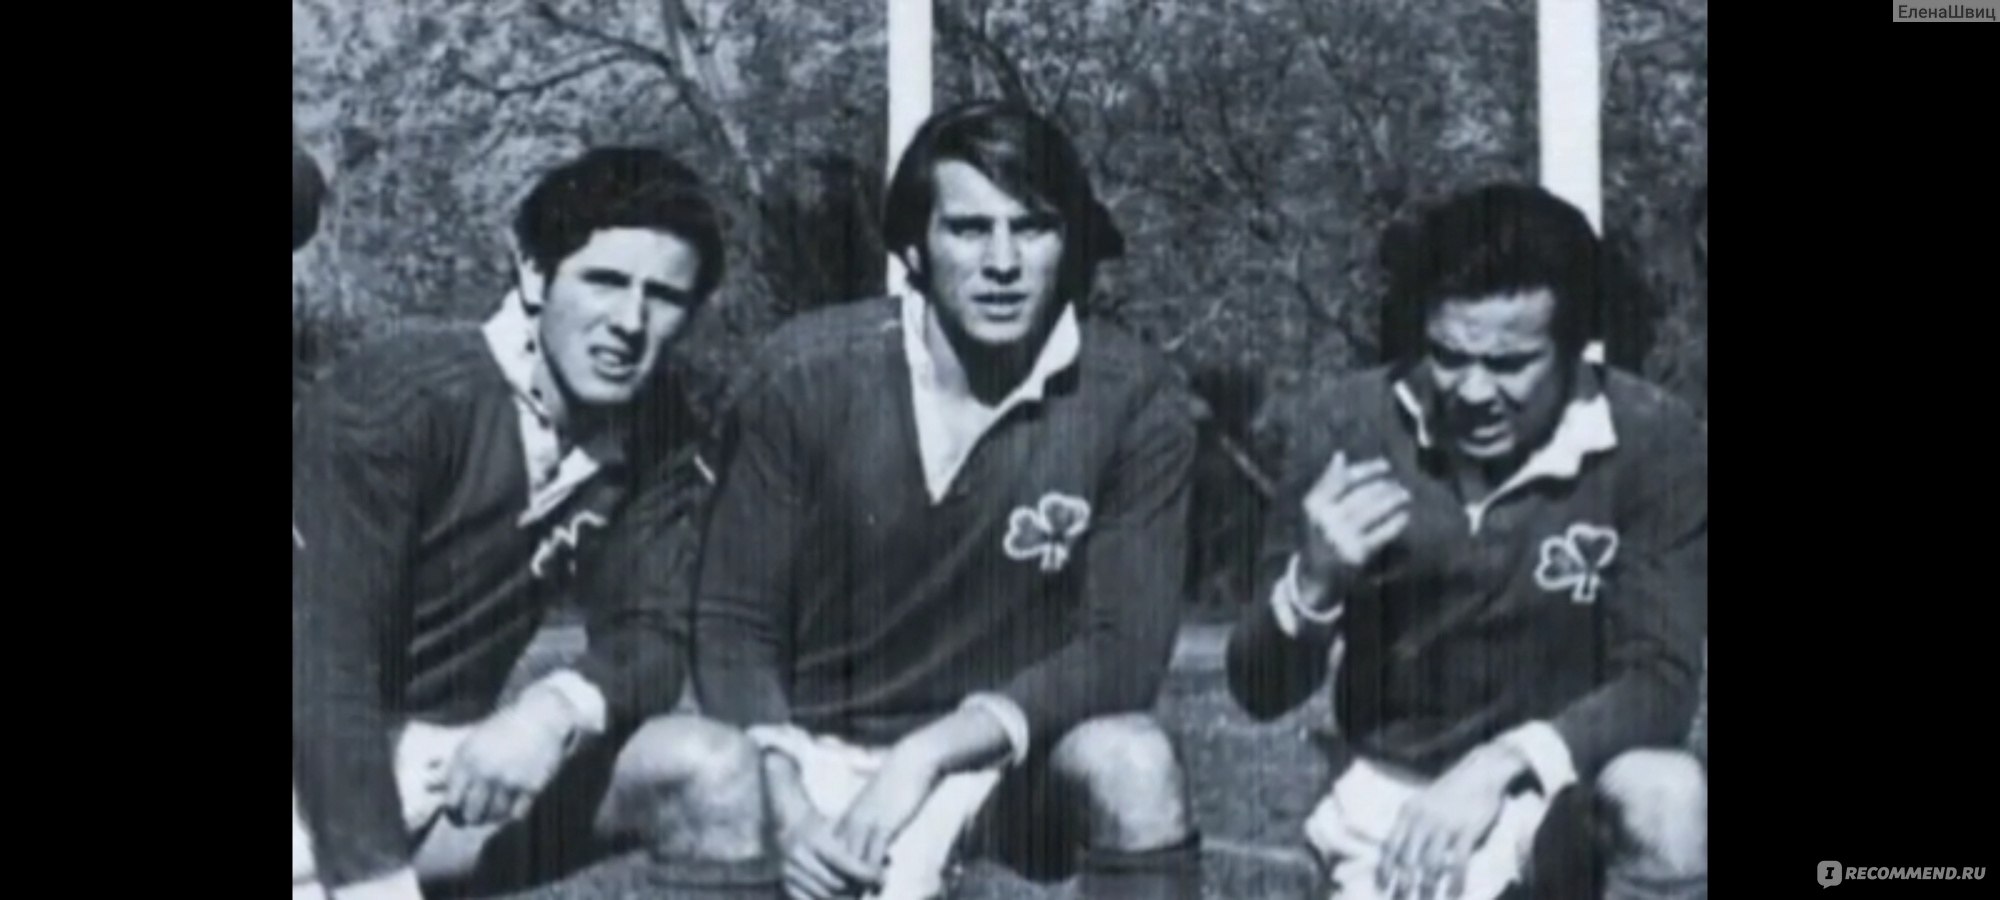 Футбольная команда авиакатастрофа. 1972 Уругвай авиакатастрофа.